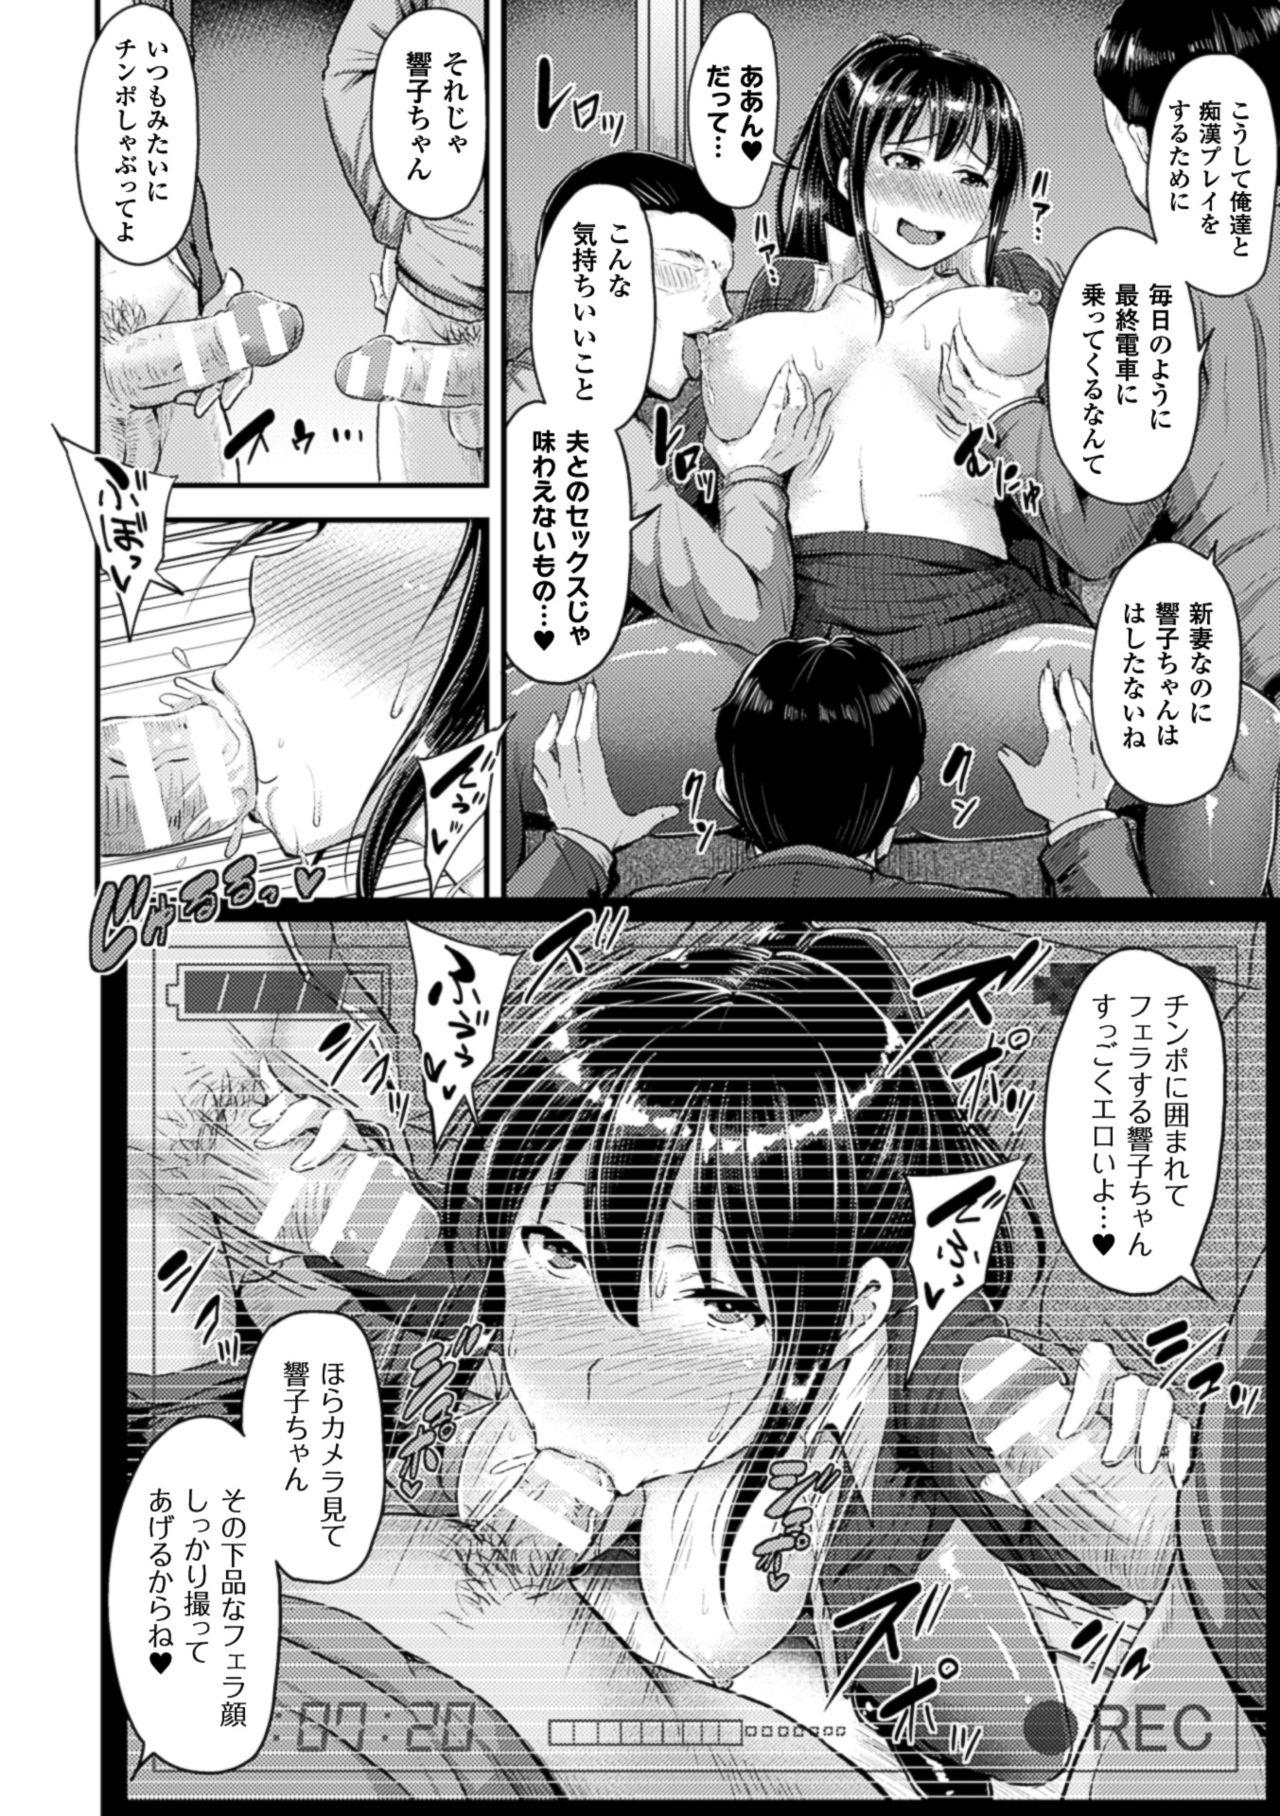 2D Comic Magazine Netorareta Kanojo kara no Video Letter de Utsu Bokki! Vol. 1 61